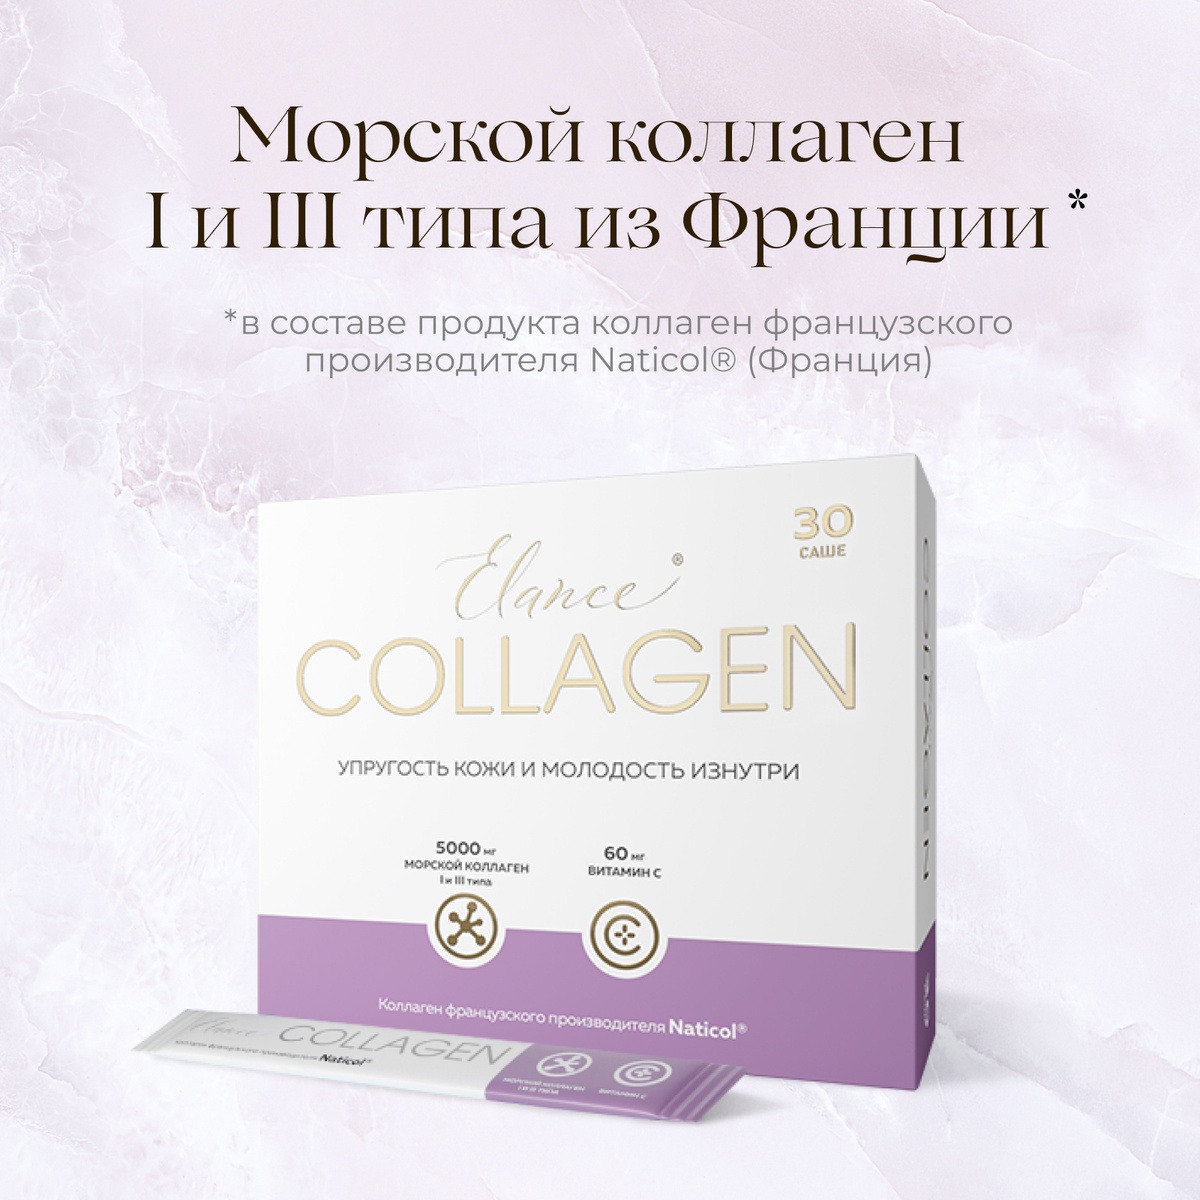 Эланс Коллаген Морской коллаген I и III типа 5000 мг, Витамин С 60 мг 30 саше, Elance Collagen  #1